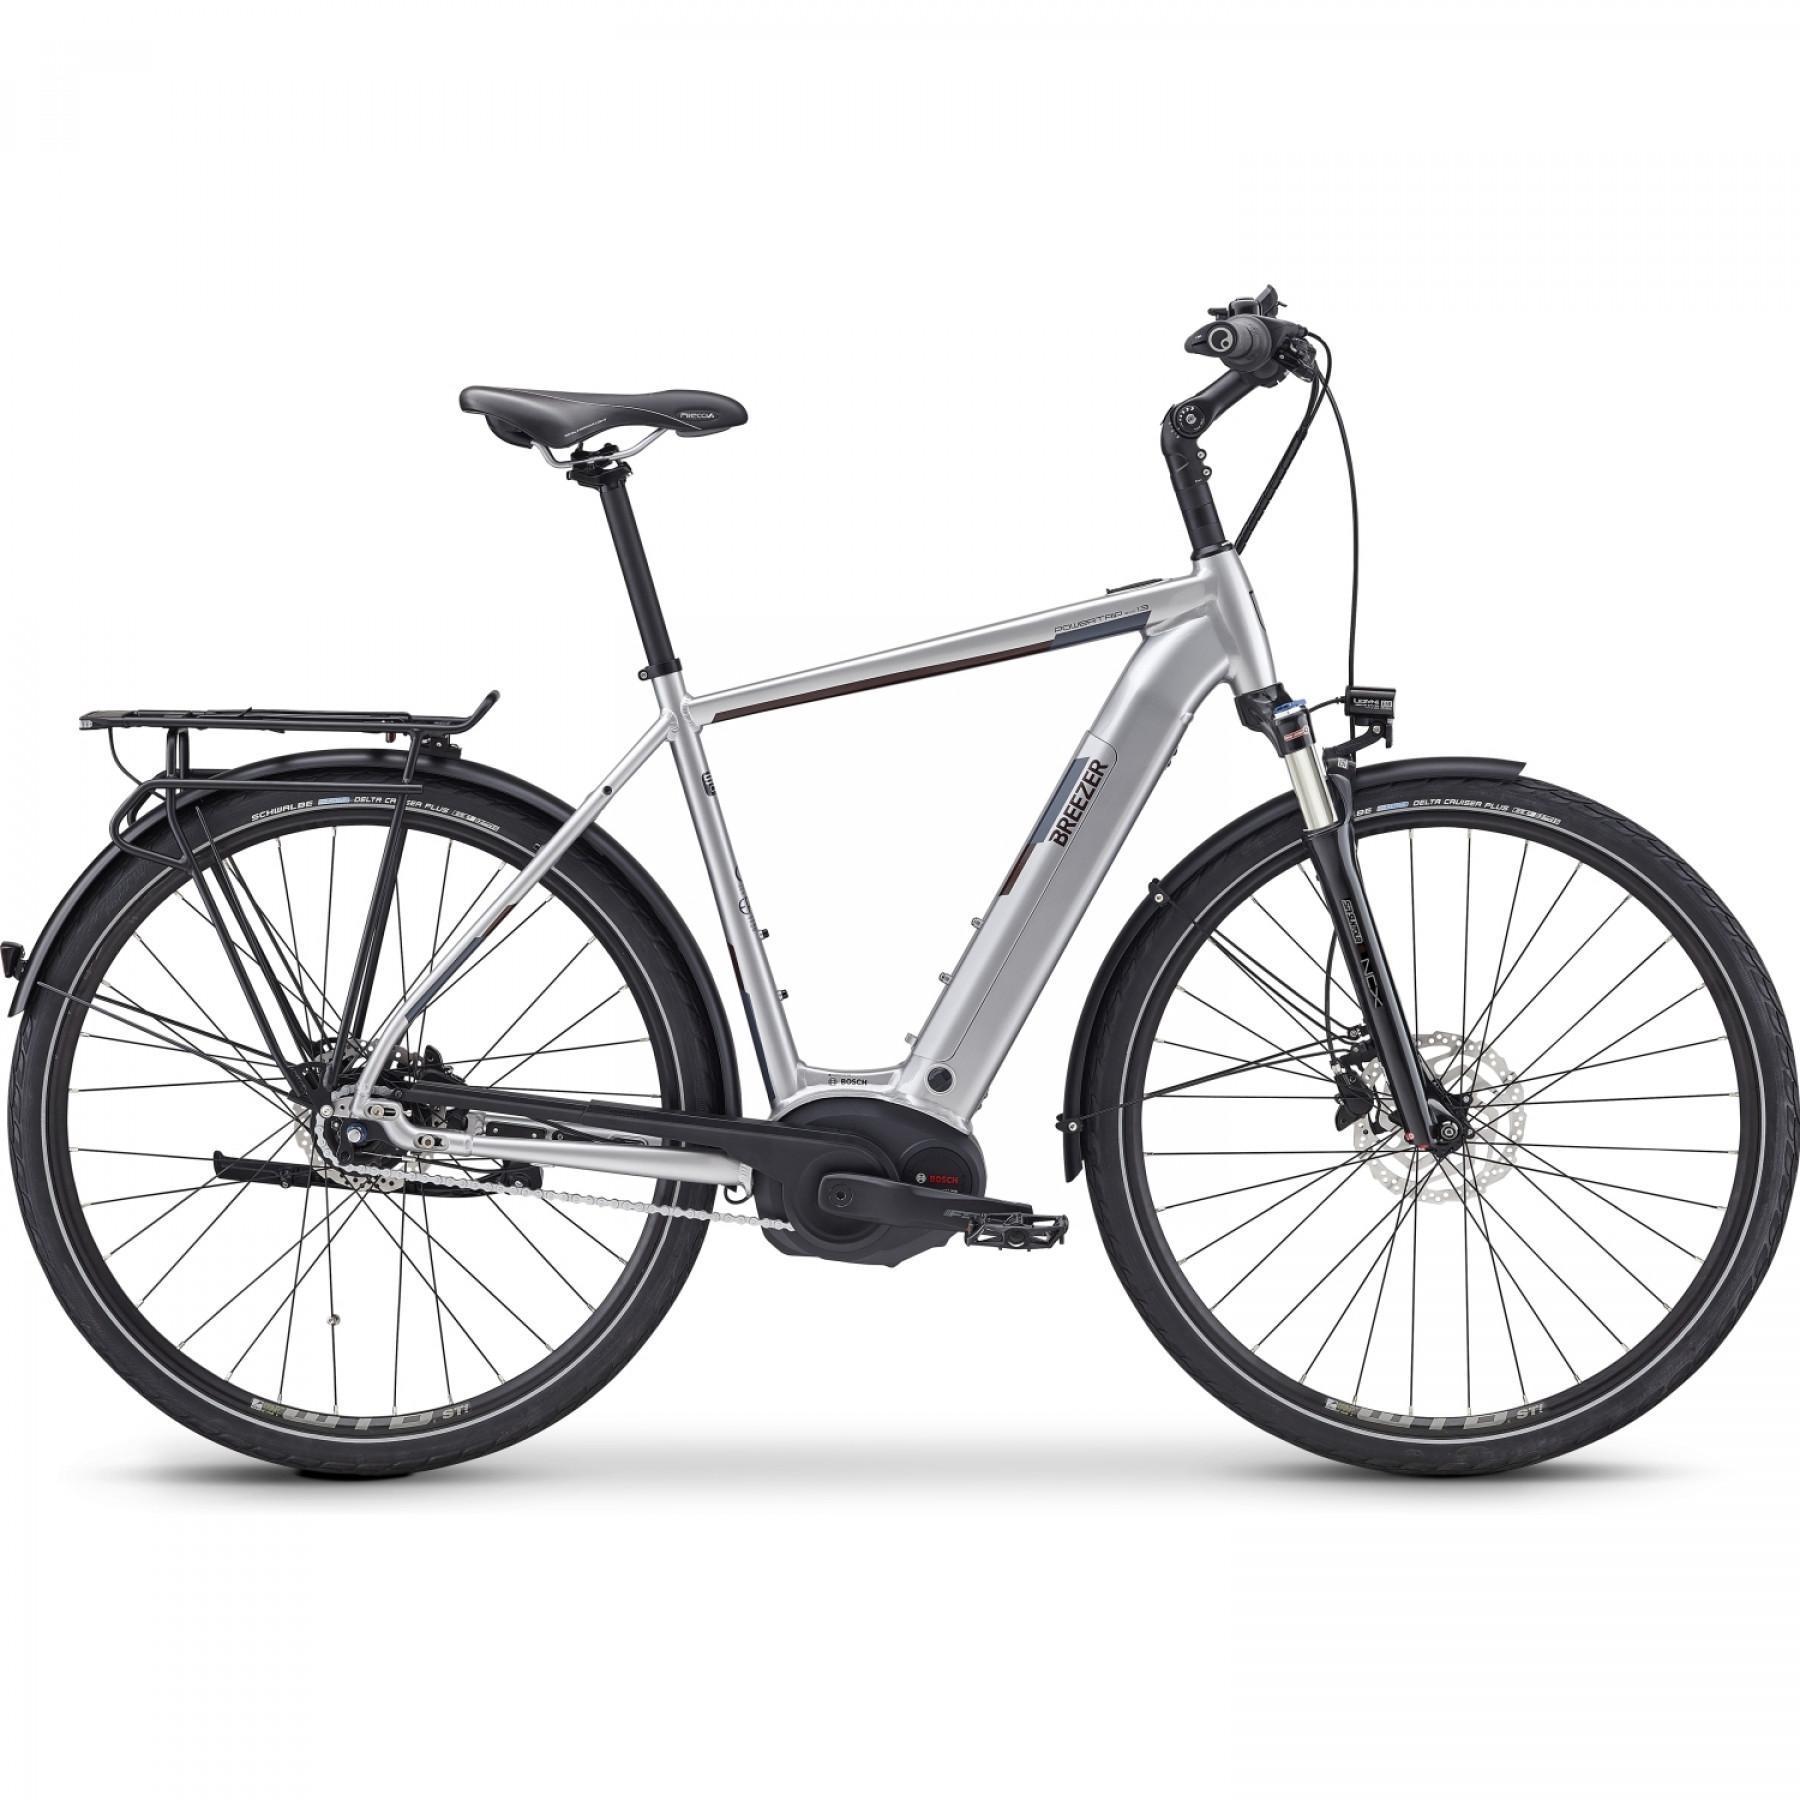 Bicicleta eléctrica Breezer Powertrip Evo IG 1.3+ 2019